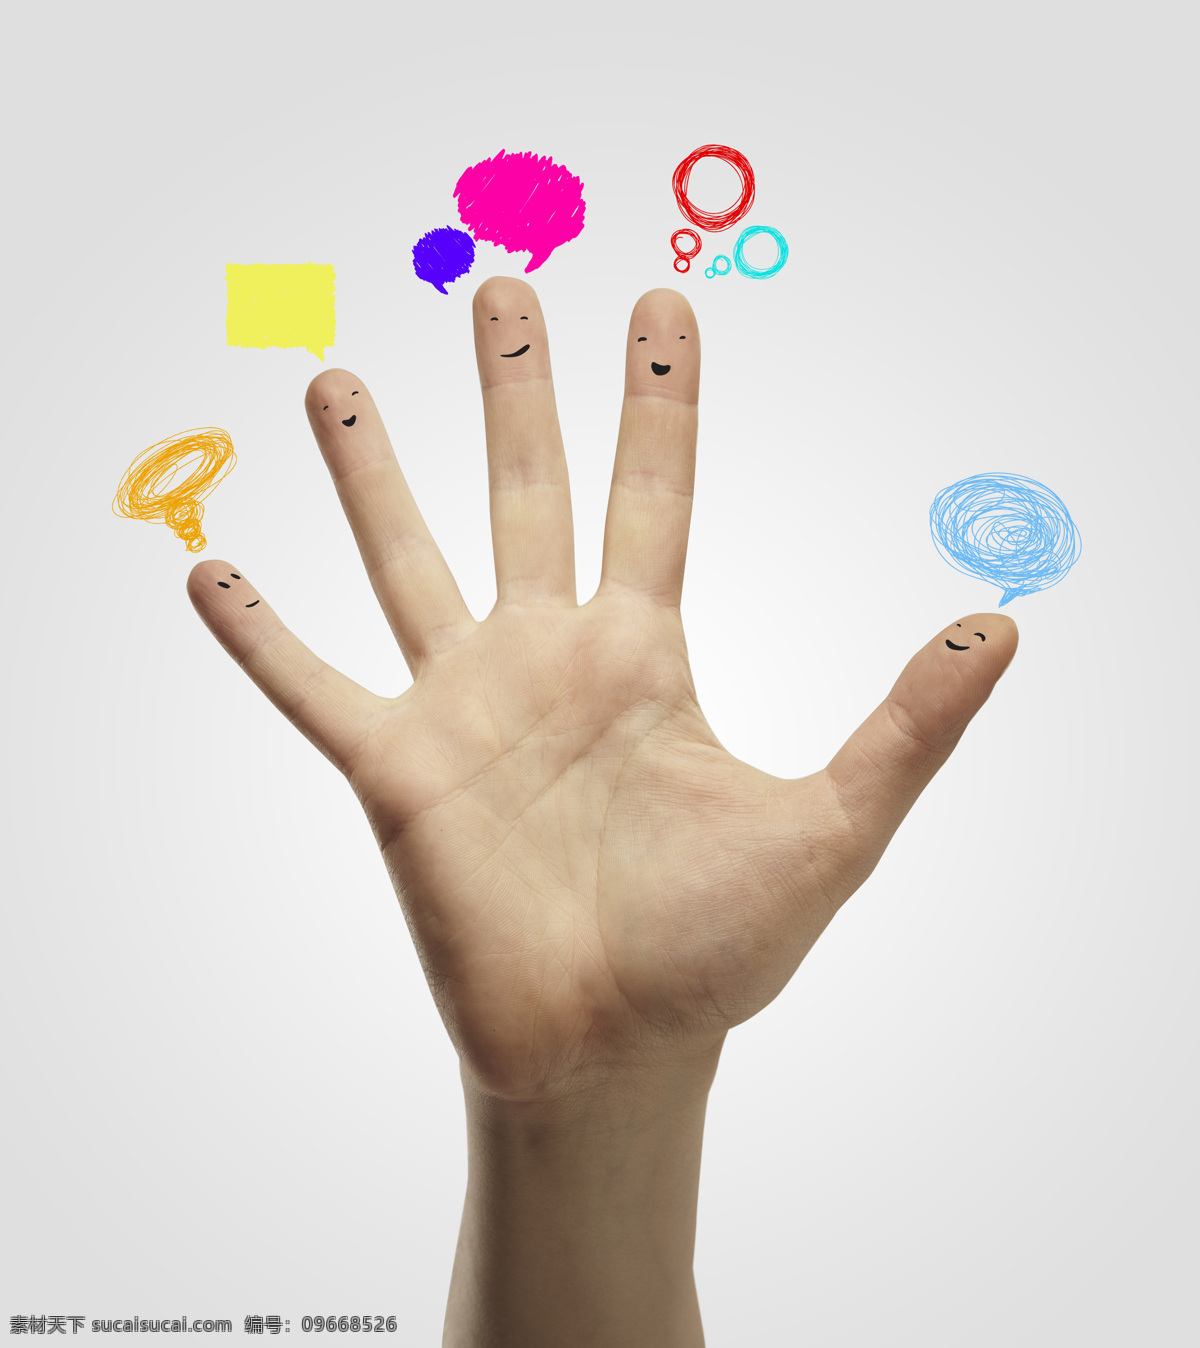 手掌 五指 对话框 涂鸦 彩色对话框 手指 手 手势 手指表情 可爱表情 其他人物 人物图片